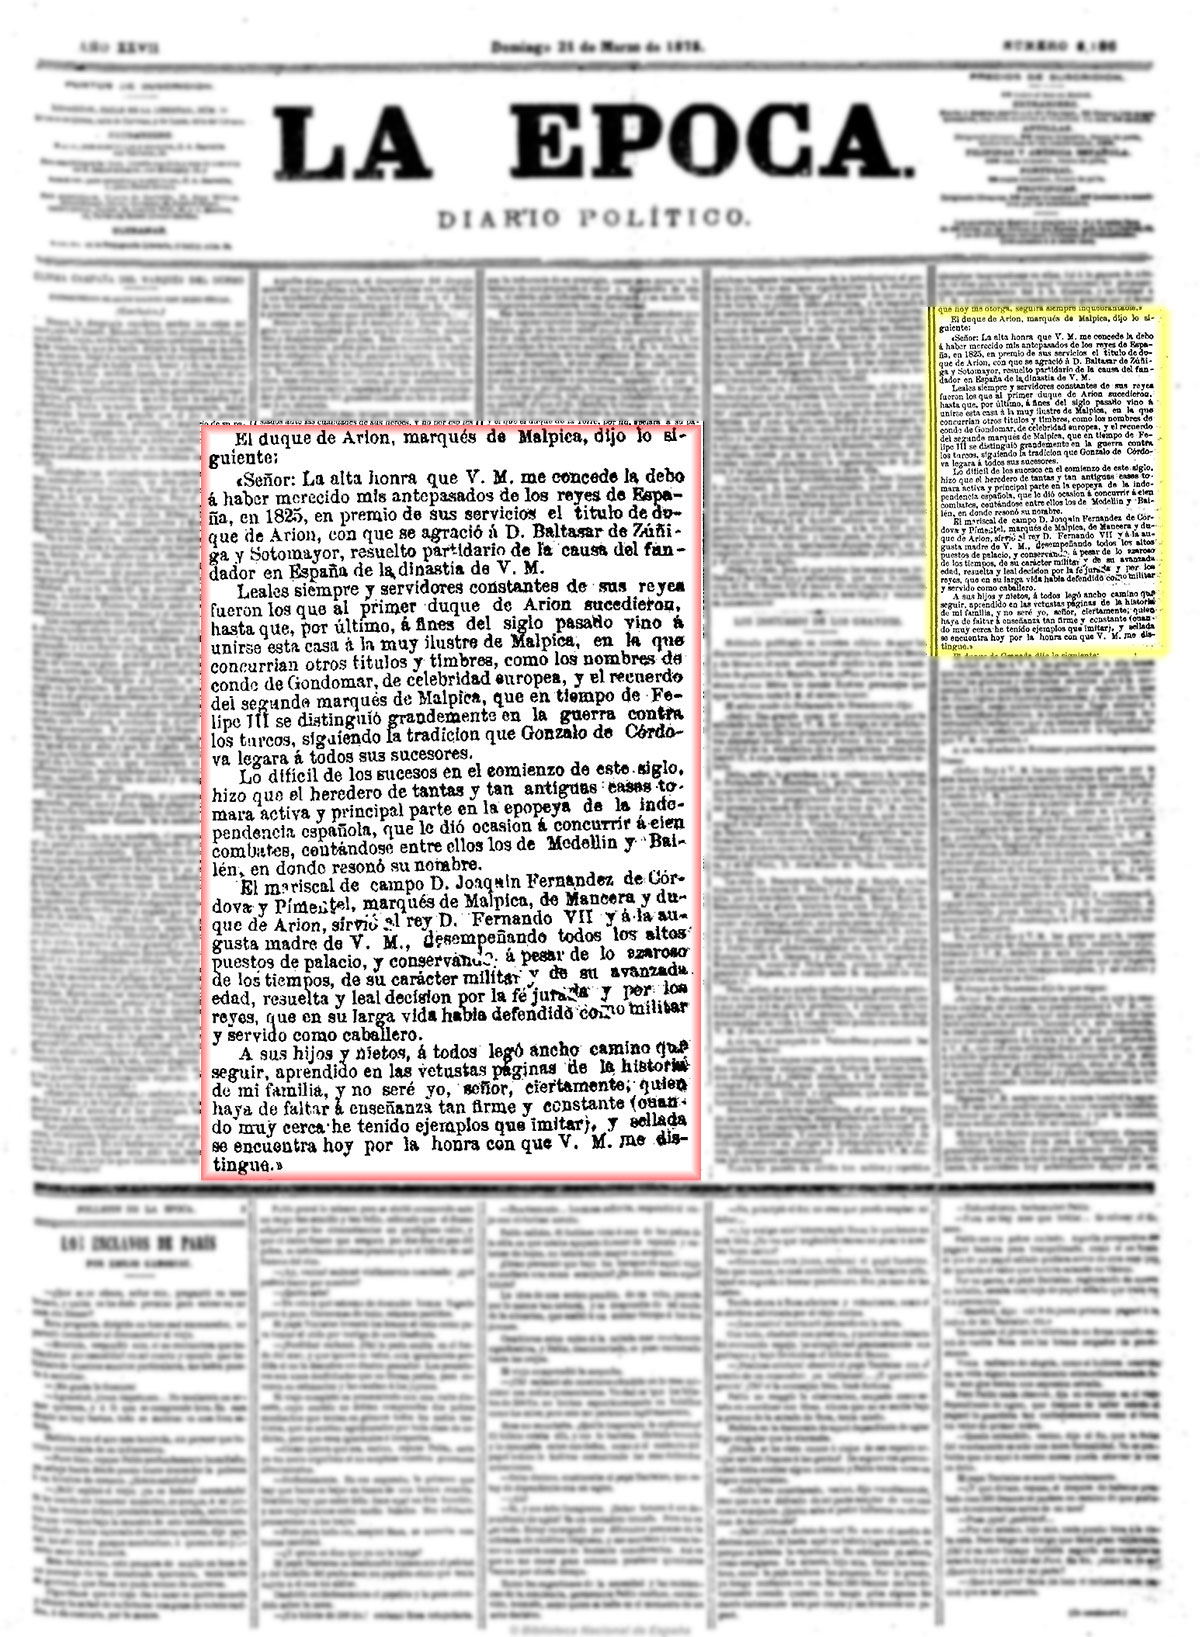 La Época. 21/3/1875, n.º 8.186, página 1. Discurso de Investidura del marqués de Malpica como grande de España